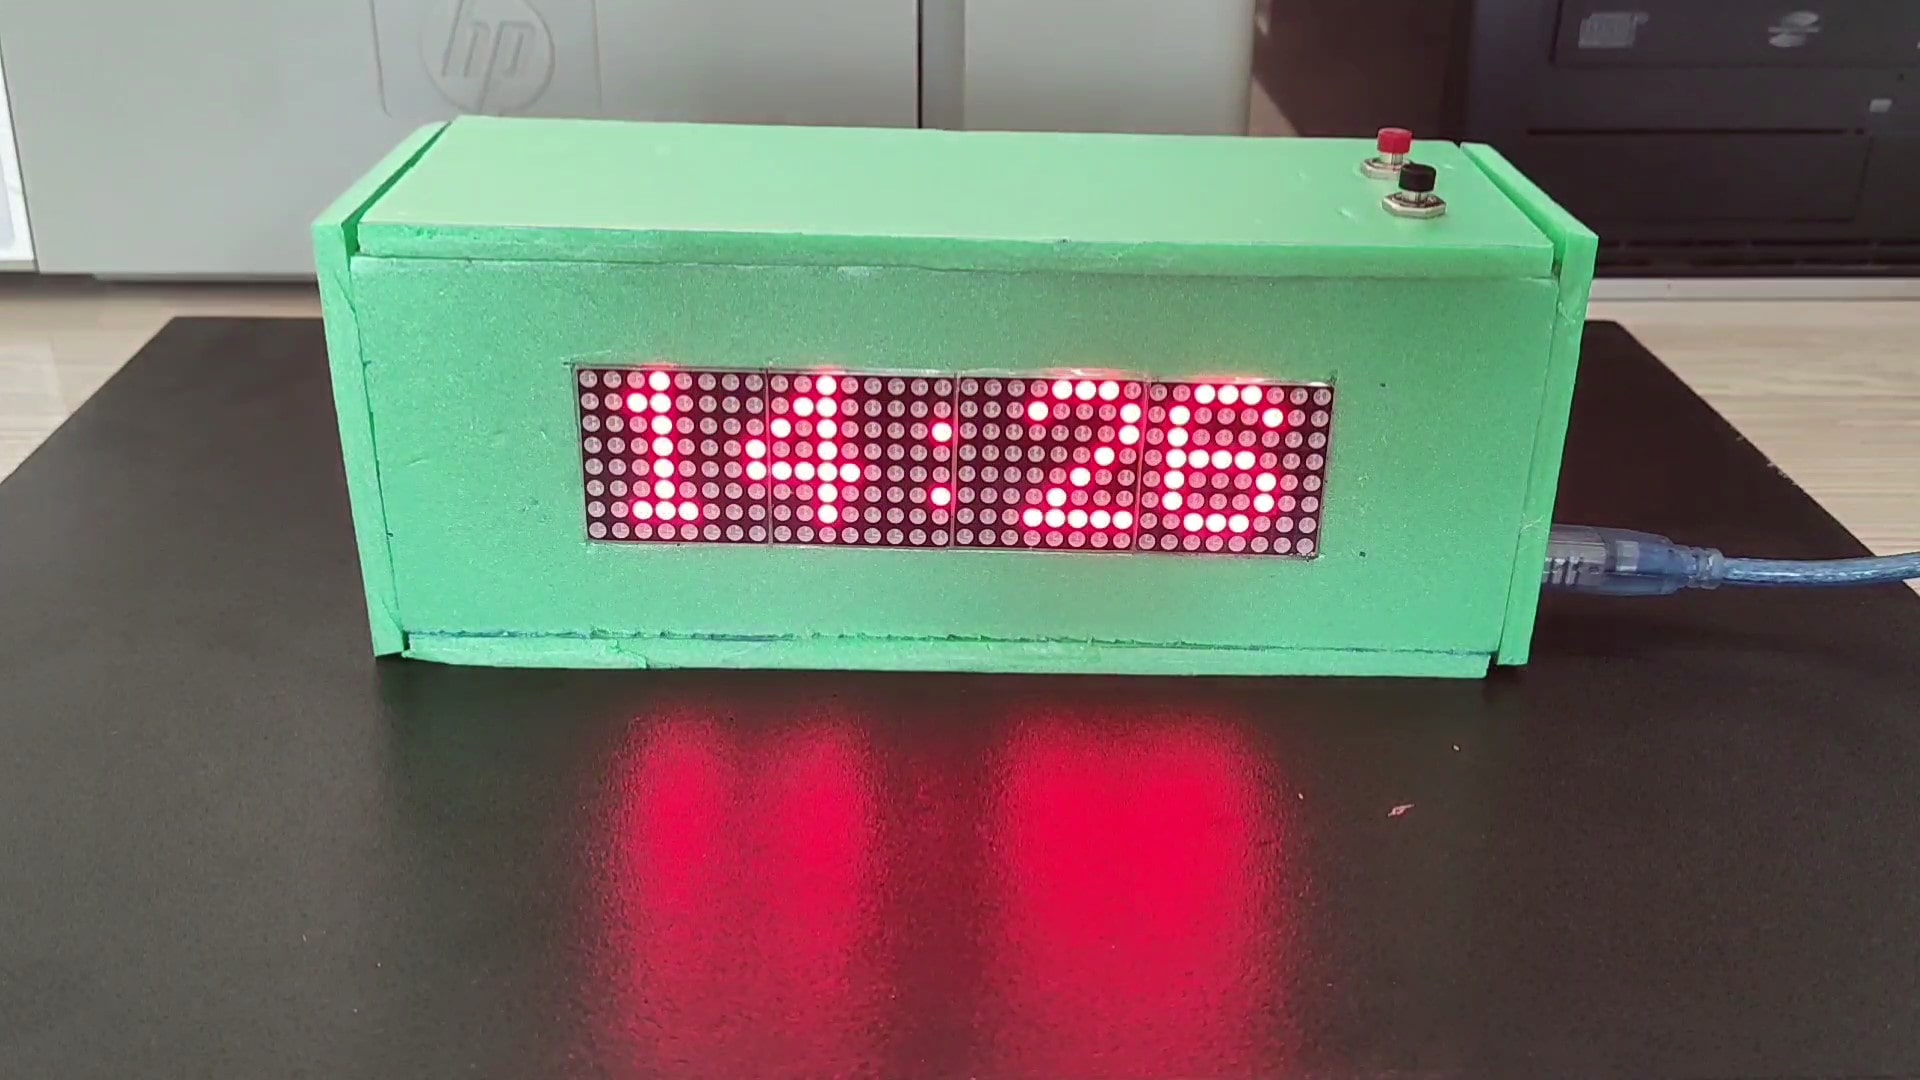 پروژه ساخت ساعت تابلو روان حرفه ای با برد آردوینو